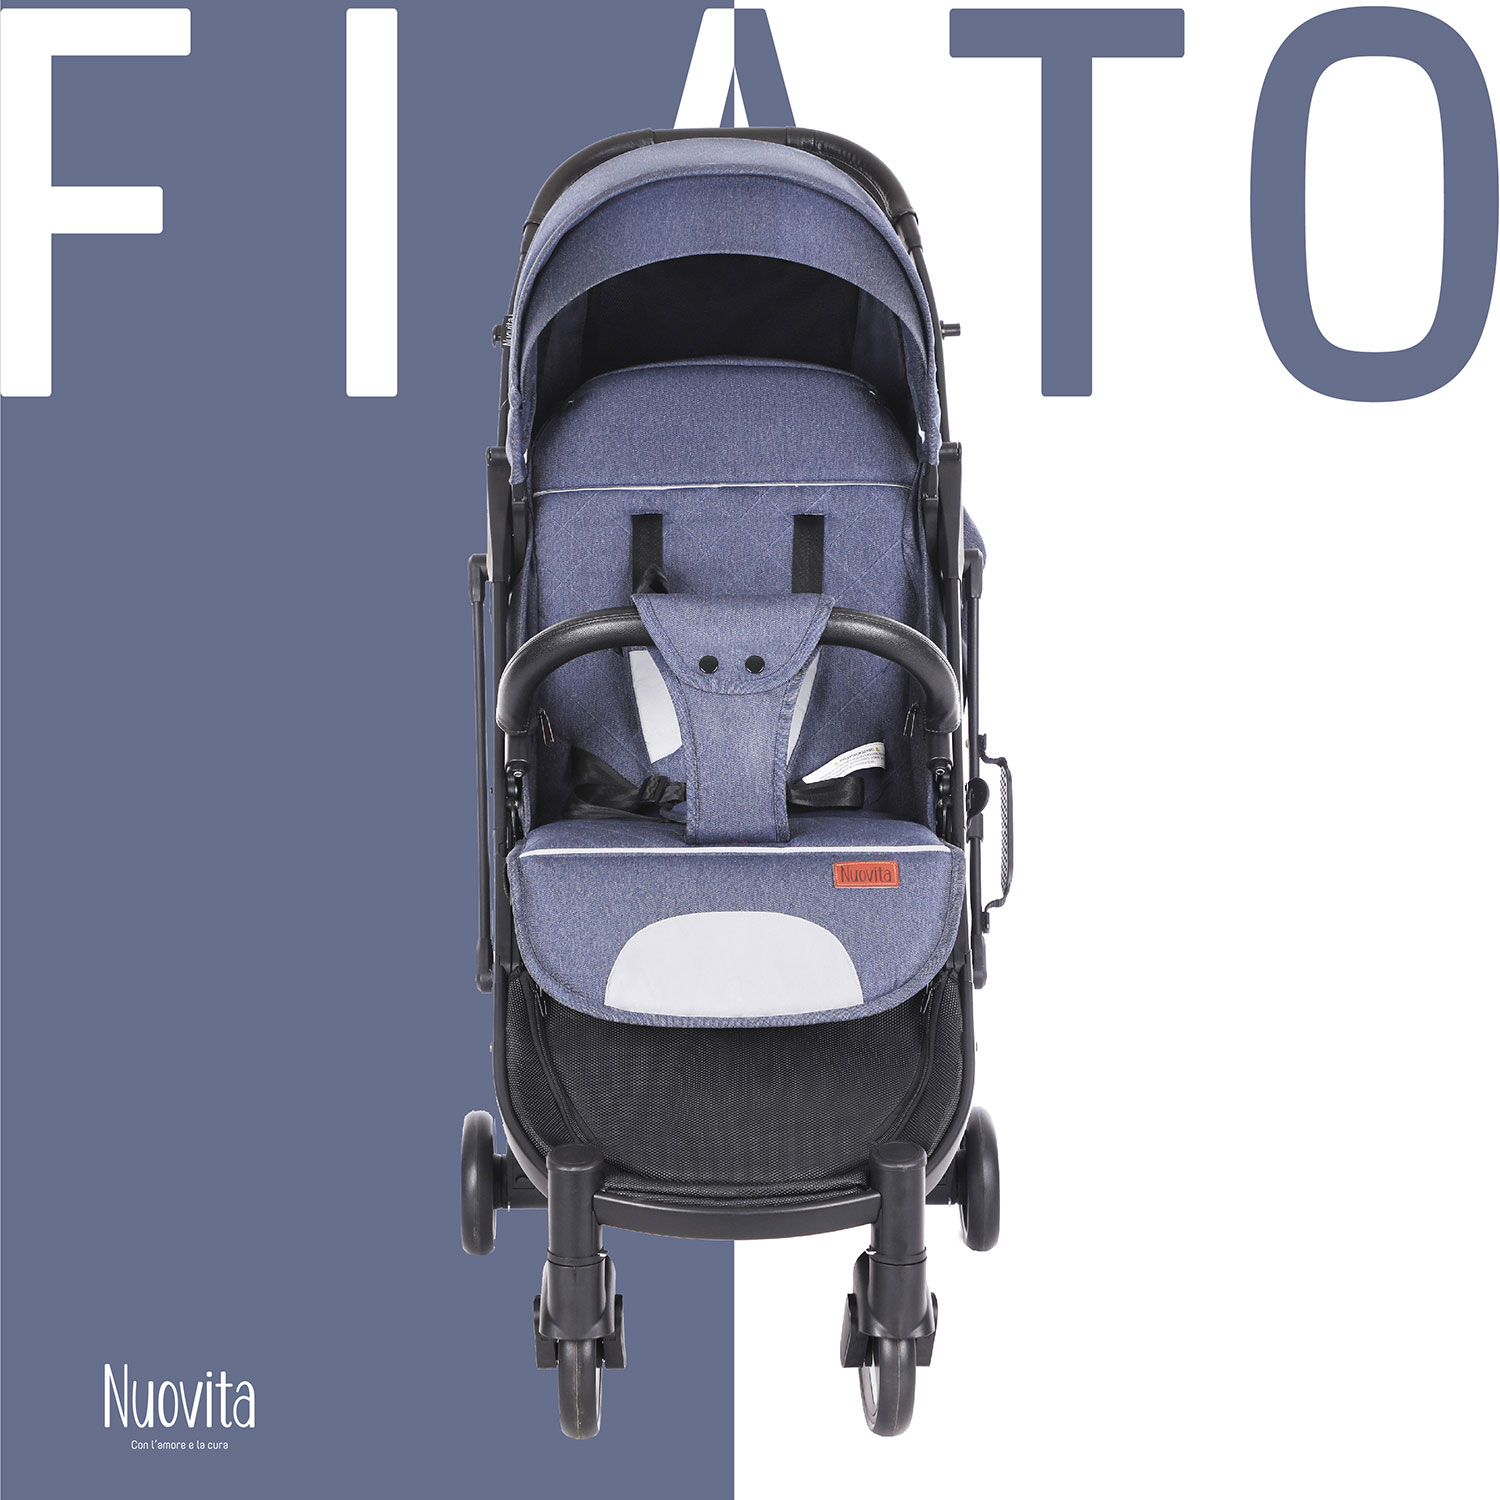 Прогулочная коляска Nuovita Fiato (Blu, Nero / Голубой, черный) прогулочная коляска nuovita fiato turchese nero бирюзовый